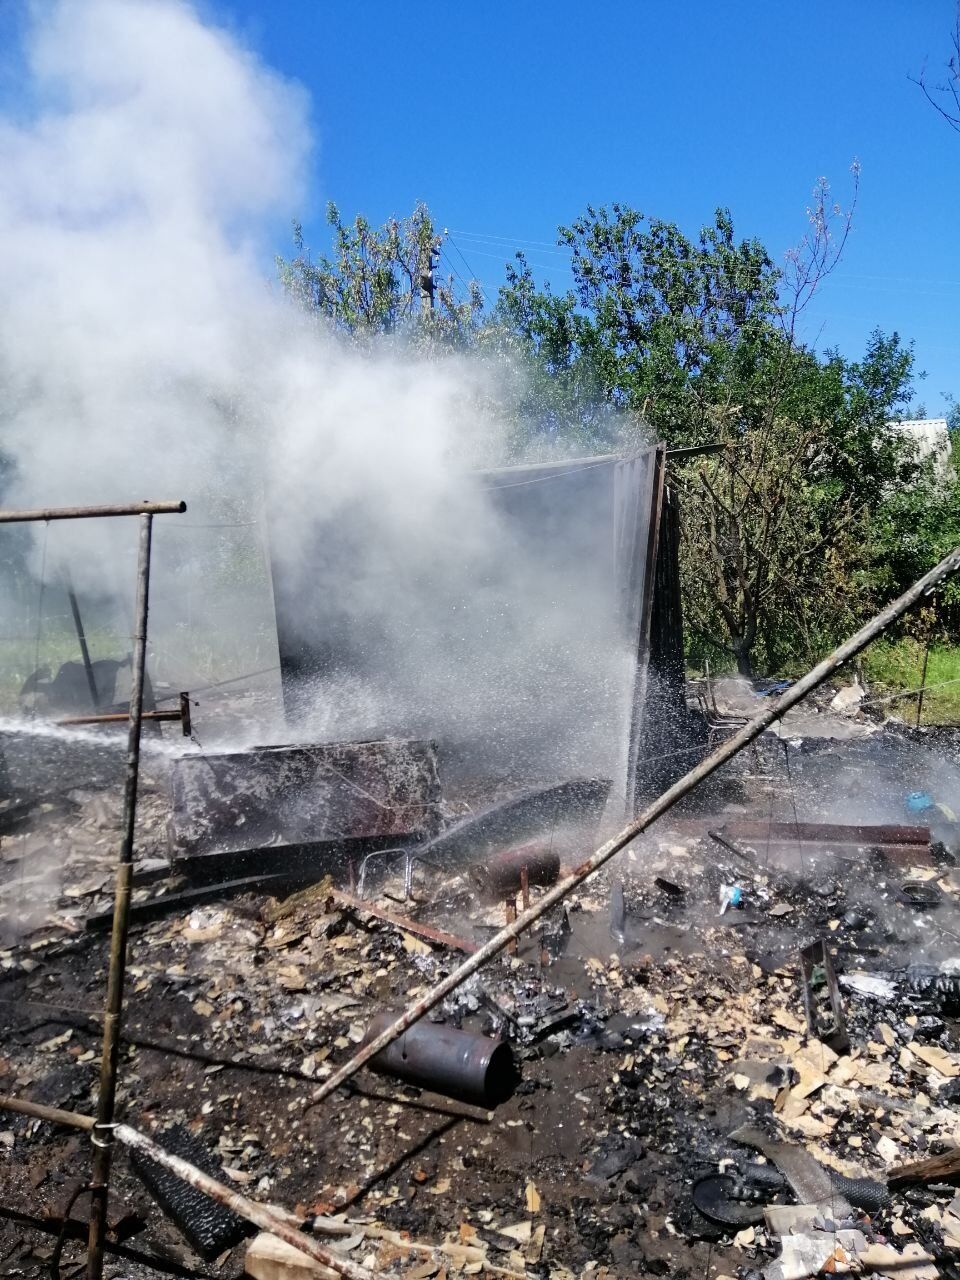 Ще одна пожежа сталася на території одного з лісгоспів неподалік села Кочеток